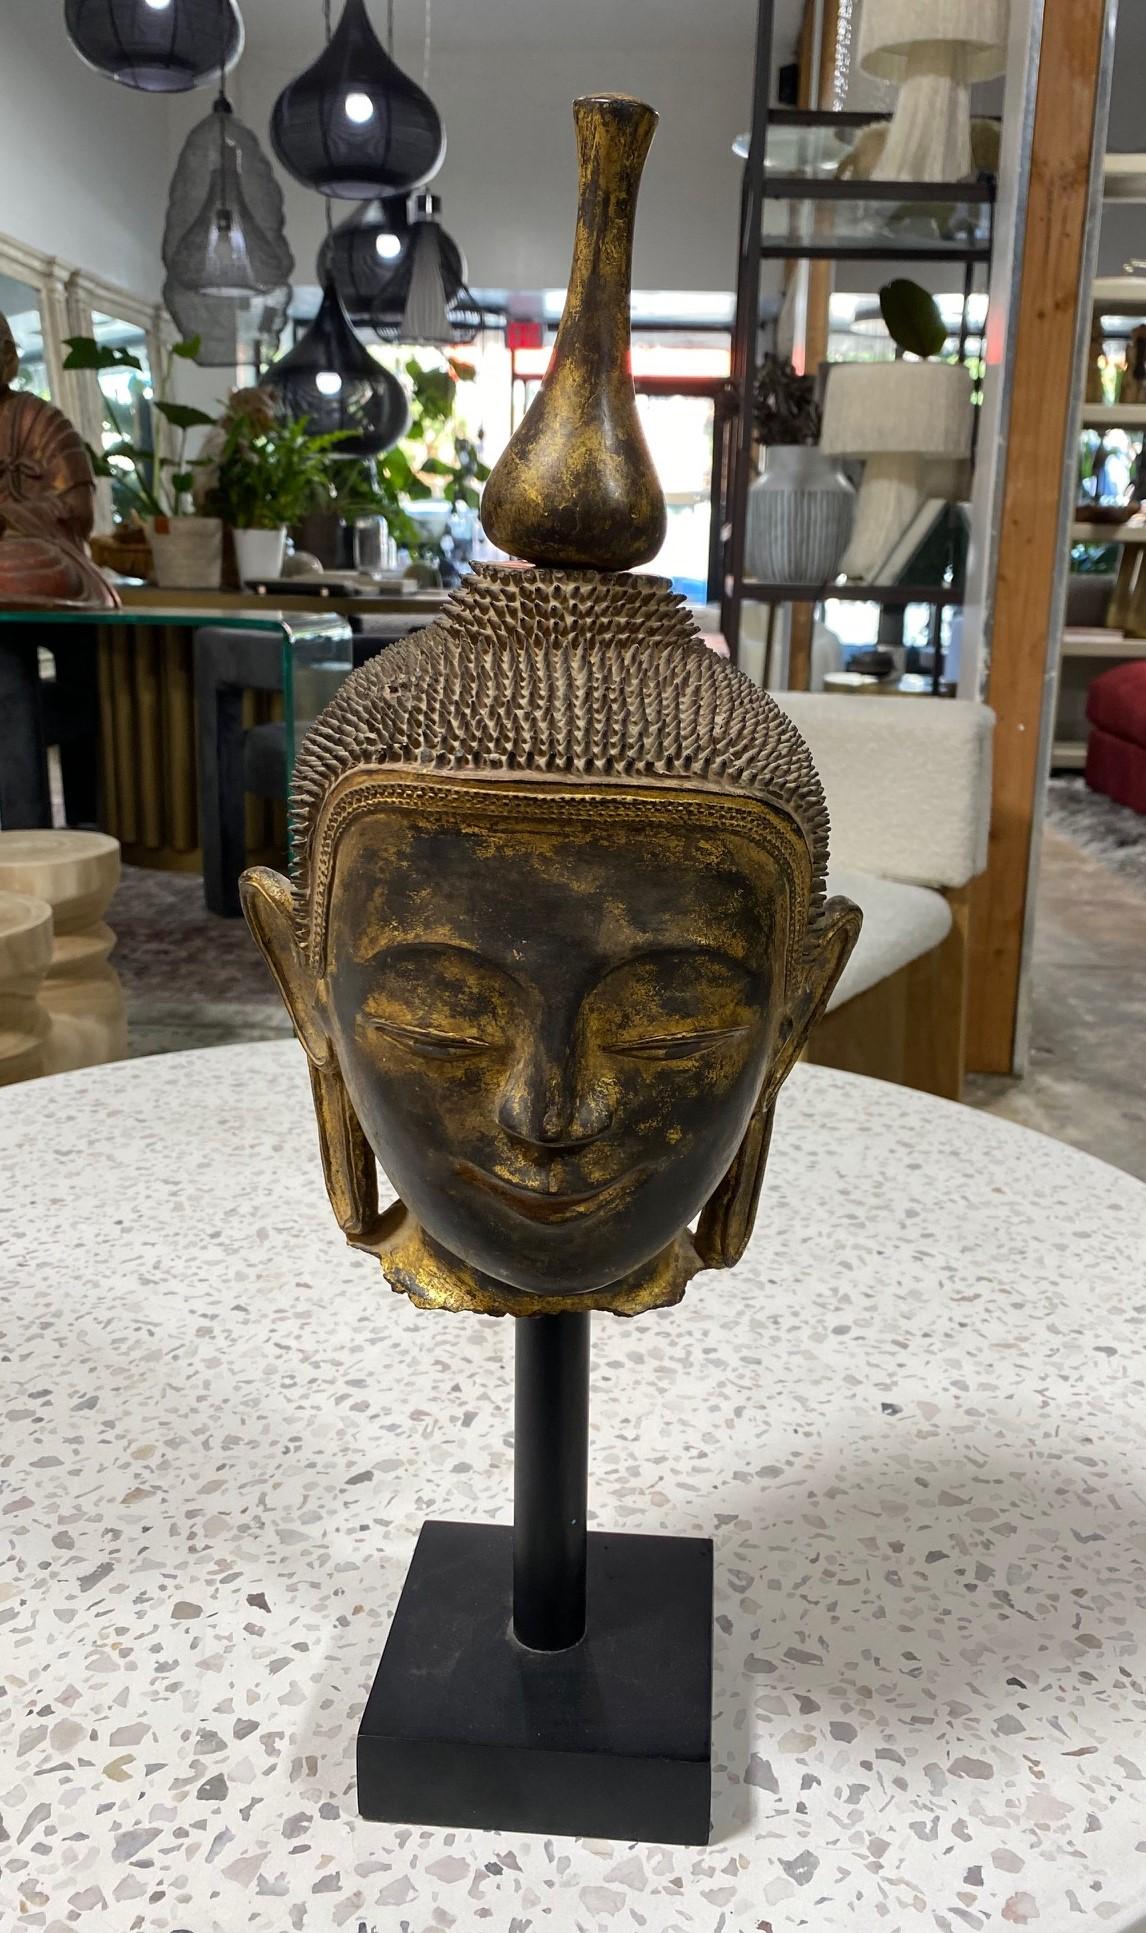 Ein außergewöhnlich schöner, ruhiger, fein gearbeiteter Buddha-Kopf/Büste - handgefertigt nach der alten Thayo-Technik, bei der eine Lackpaste verwendet wird, die durch Mischen von Lack mit Holzasche, Reishülsen, Knochenpulver und Sägemehl